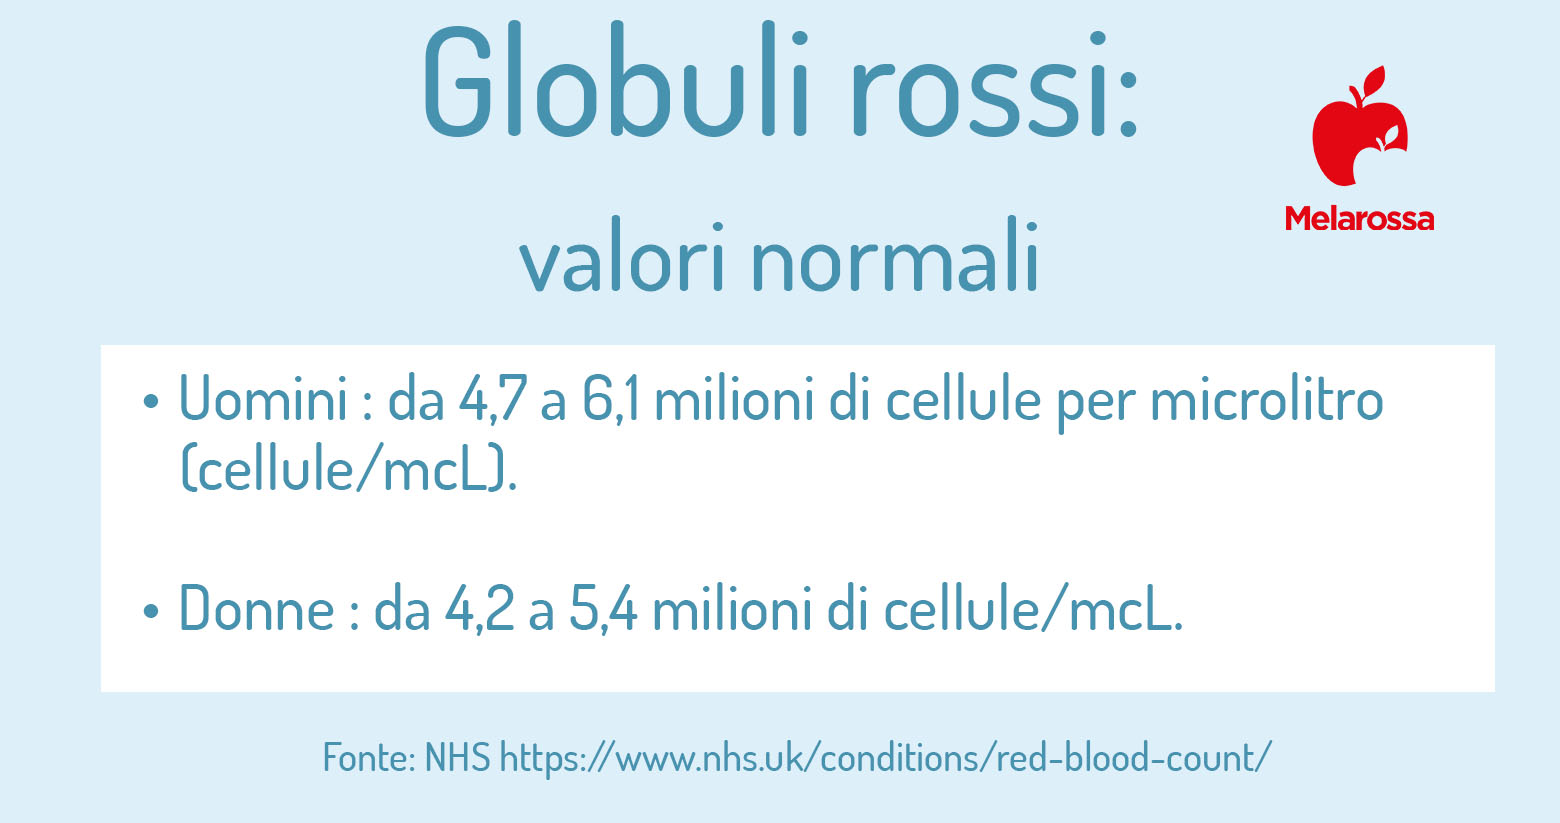 eritrociti: valori normali dei globuli rossi